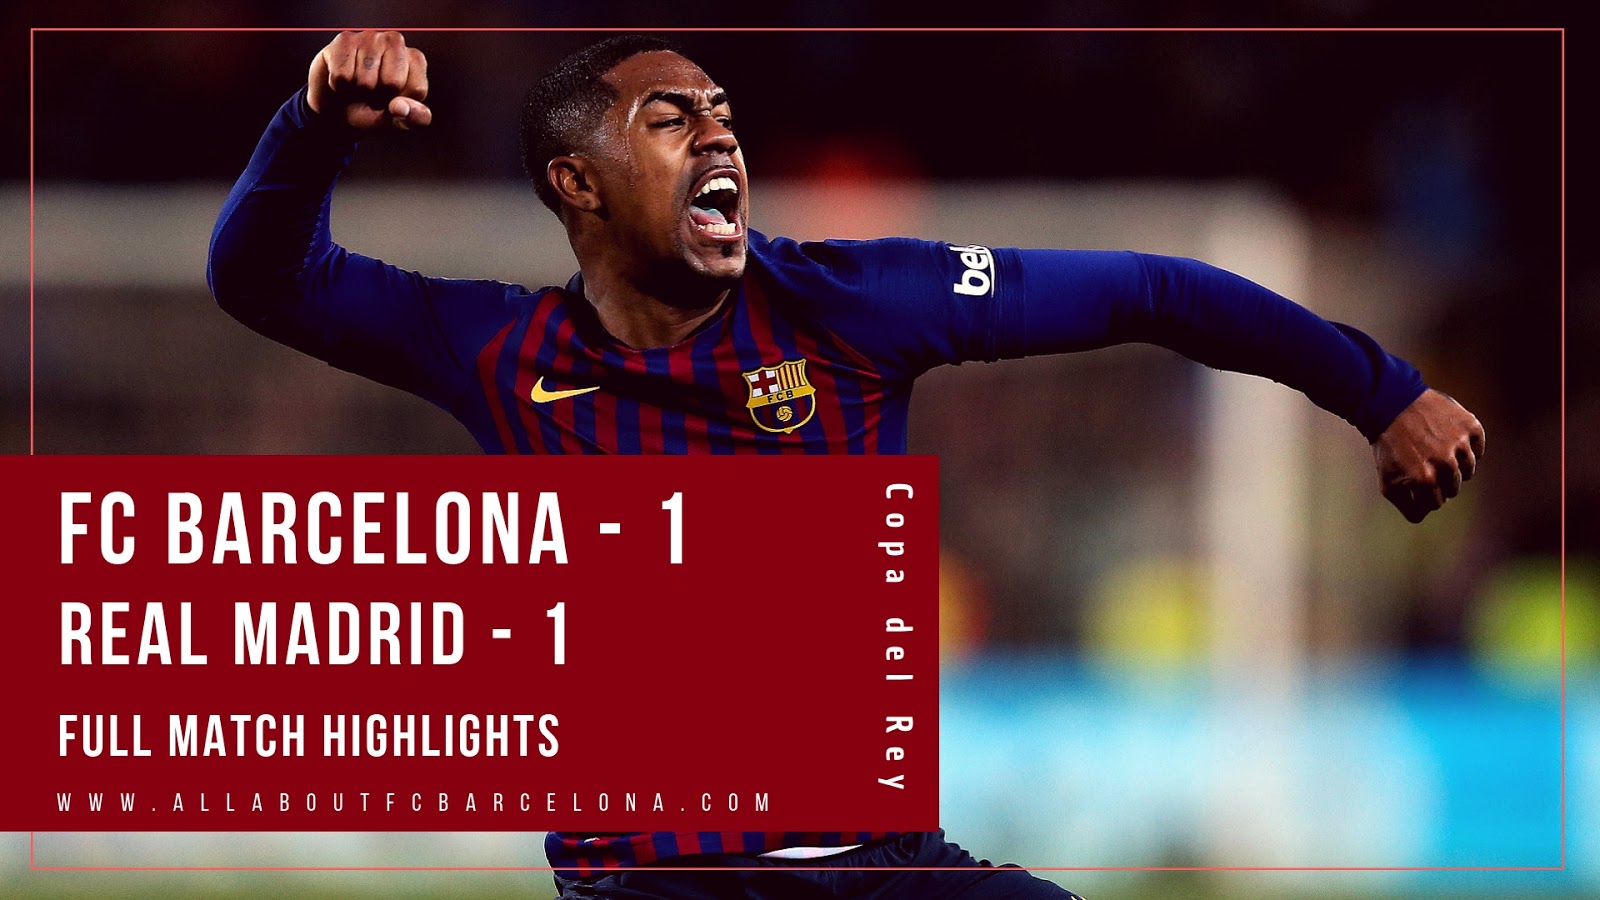 FCBarcelona-1-realMadrid-1-Full-Match-Highlights-Video